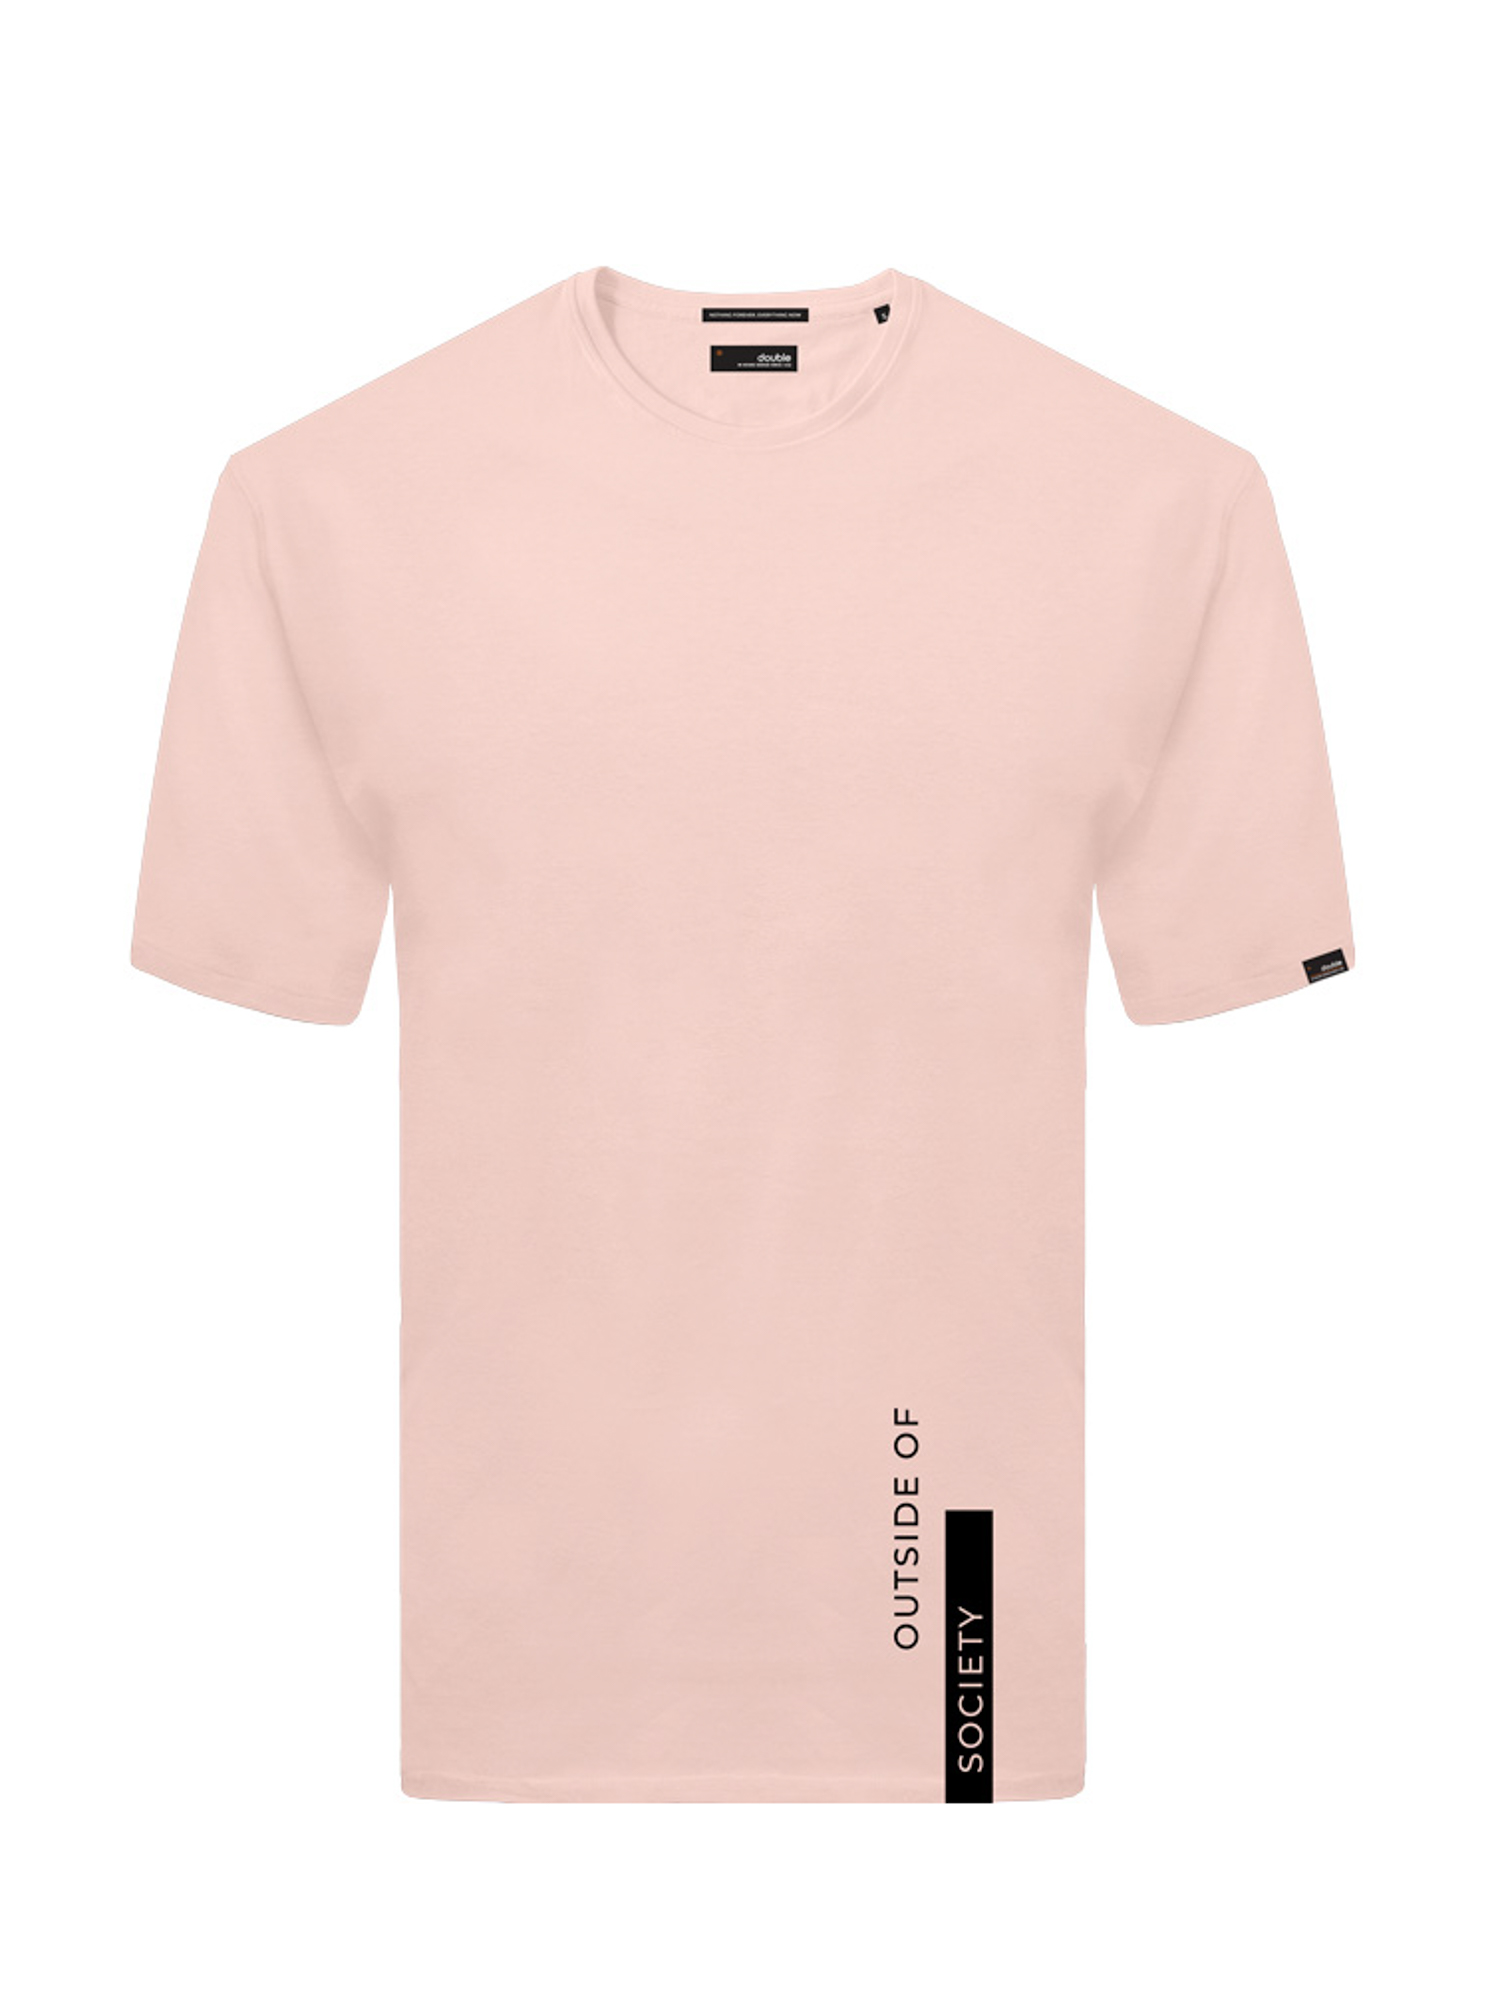 Ανδρική Μπλούζα Μακό Plus Size - Ροζ